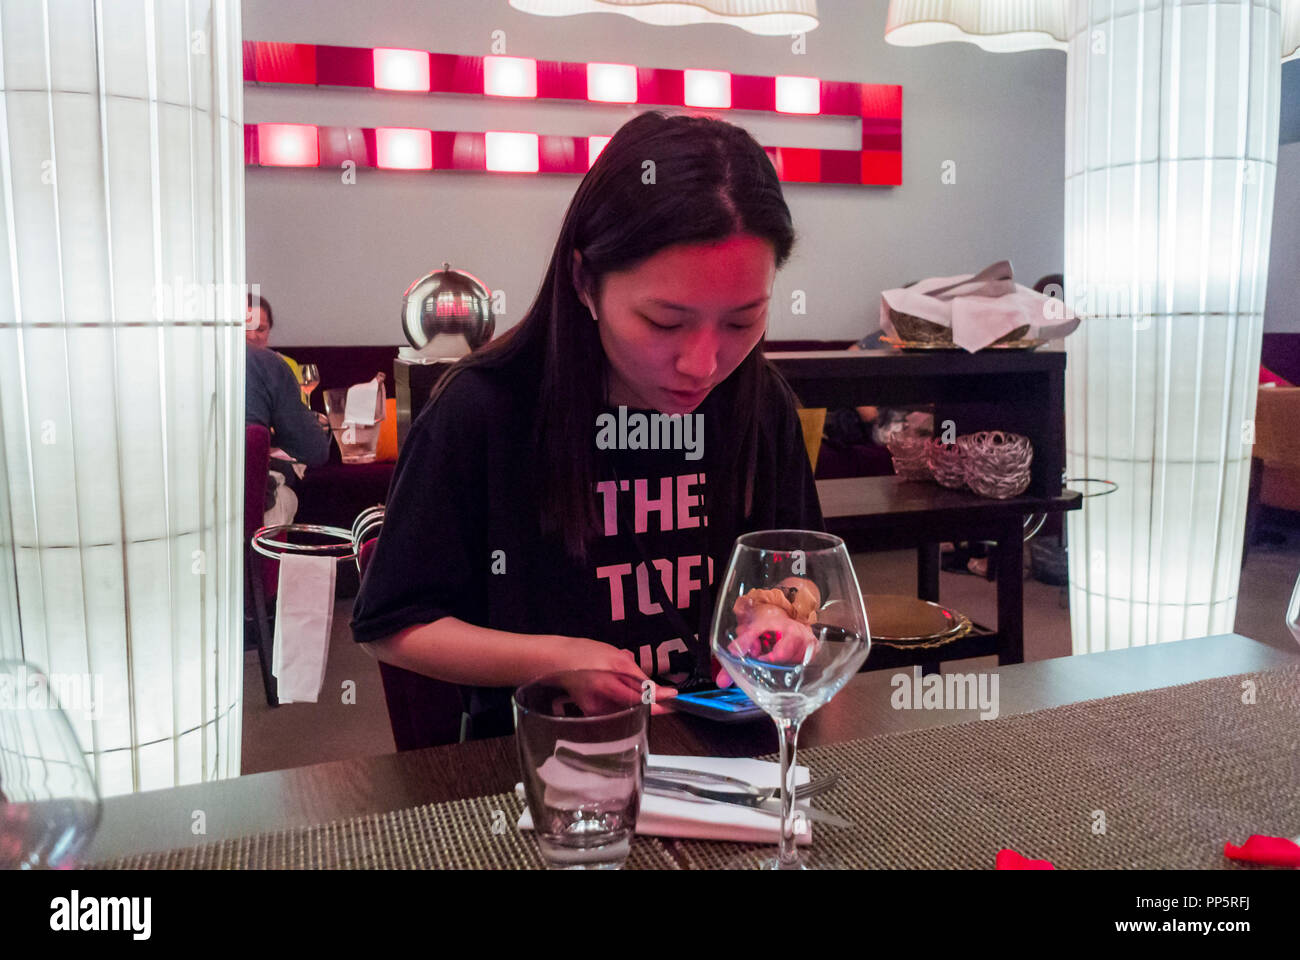 Marseille, Frankreich, Chinesische Touristen insdie lokalen französischen Bistro Restaurant in der Nähe des Old Port. Frau mit Smart Phone am Tisch Stockfoto